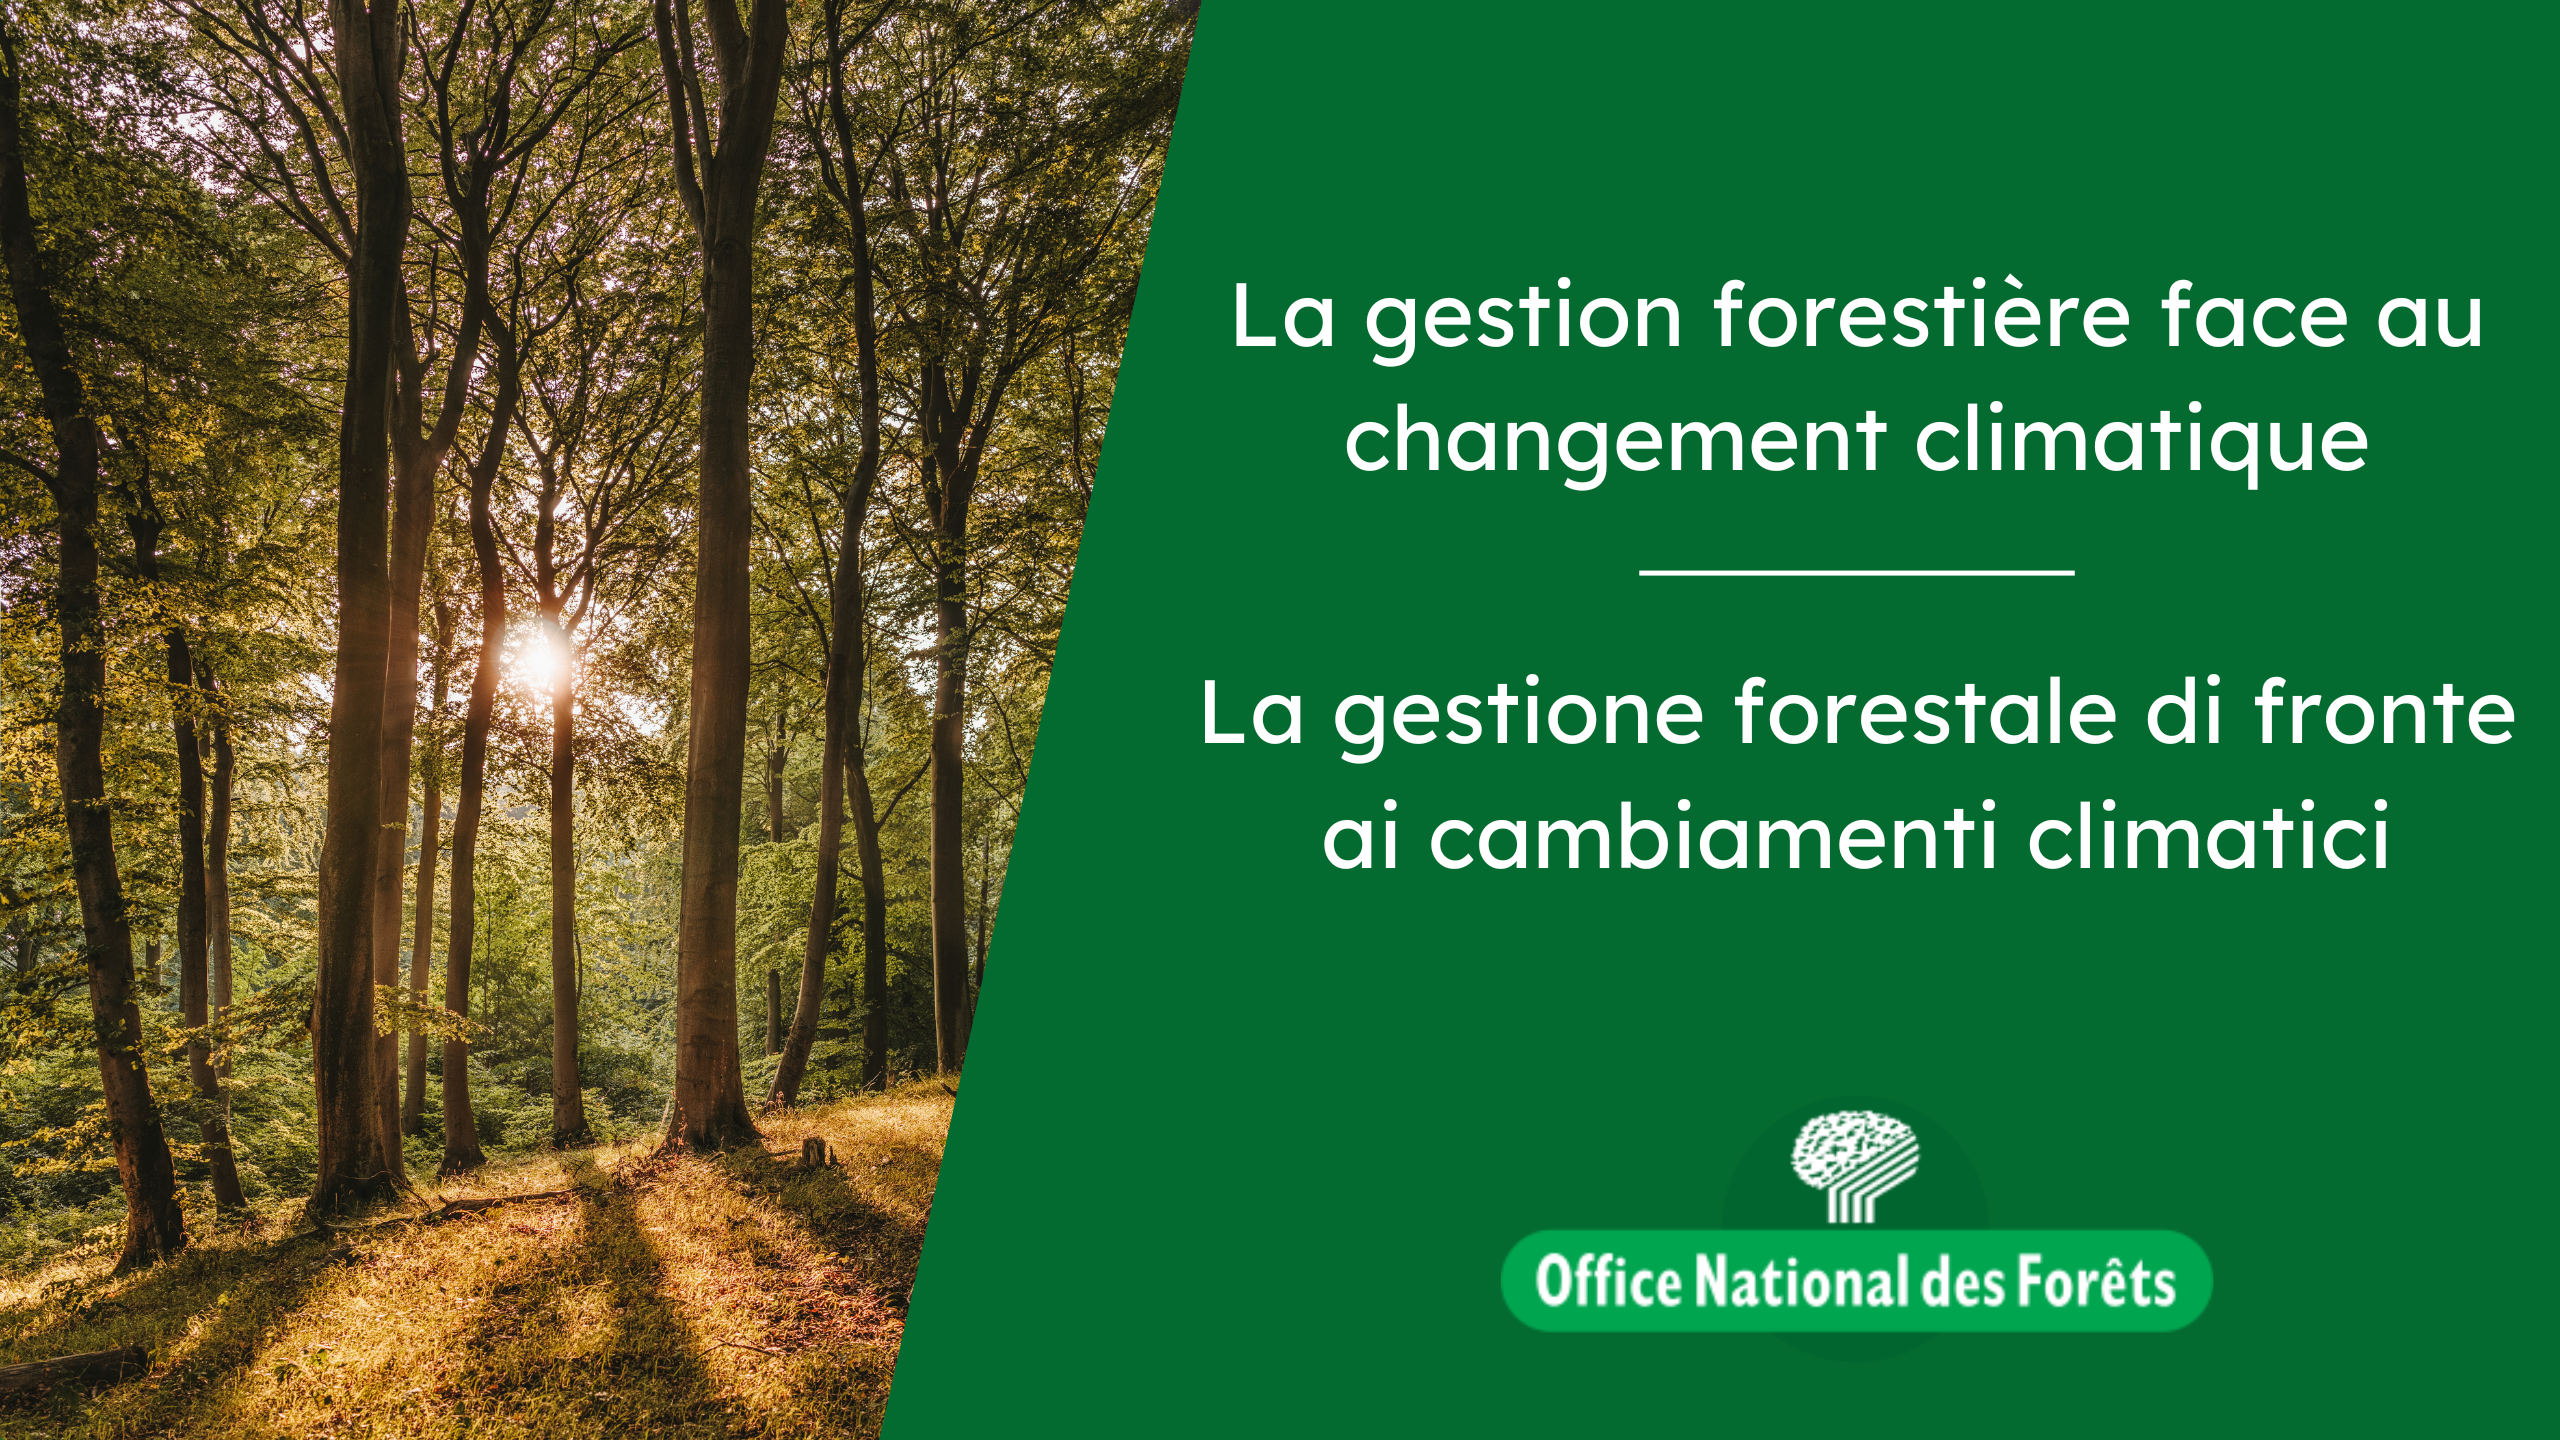 La gestione forestale di fronte ai cambiamenti climatici